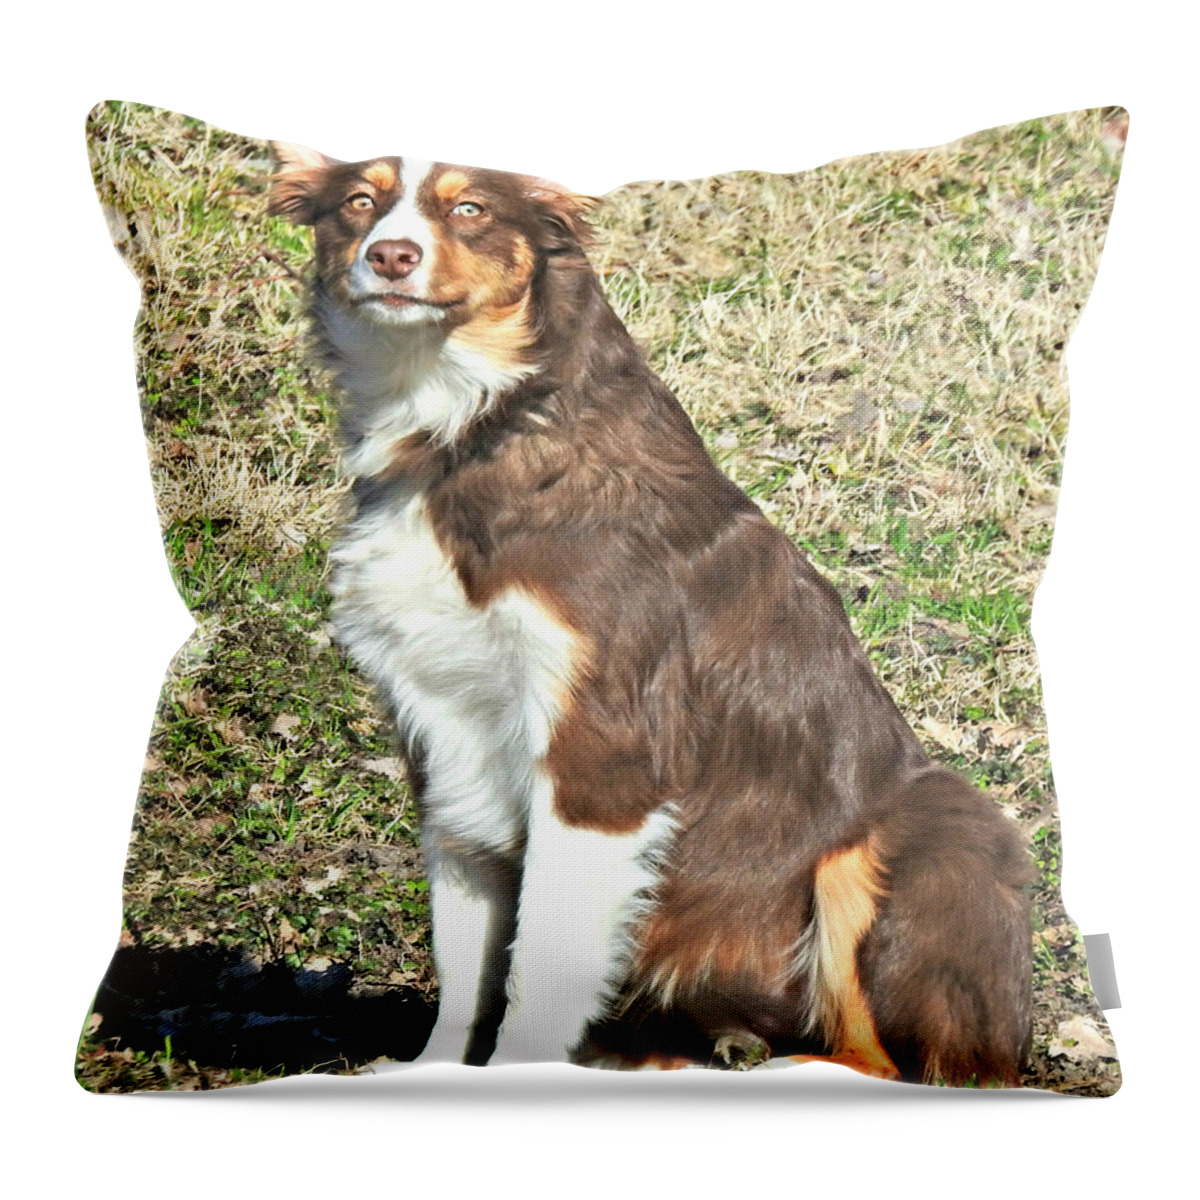 Beautiful Neighbor Dog Throw Pillow featuring the photograph Beautiful Neighbor Dog by Kathy M Krause